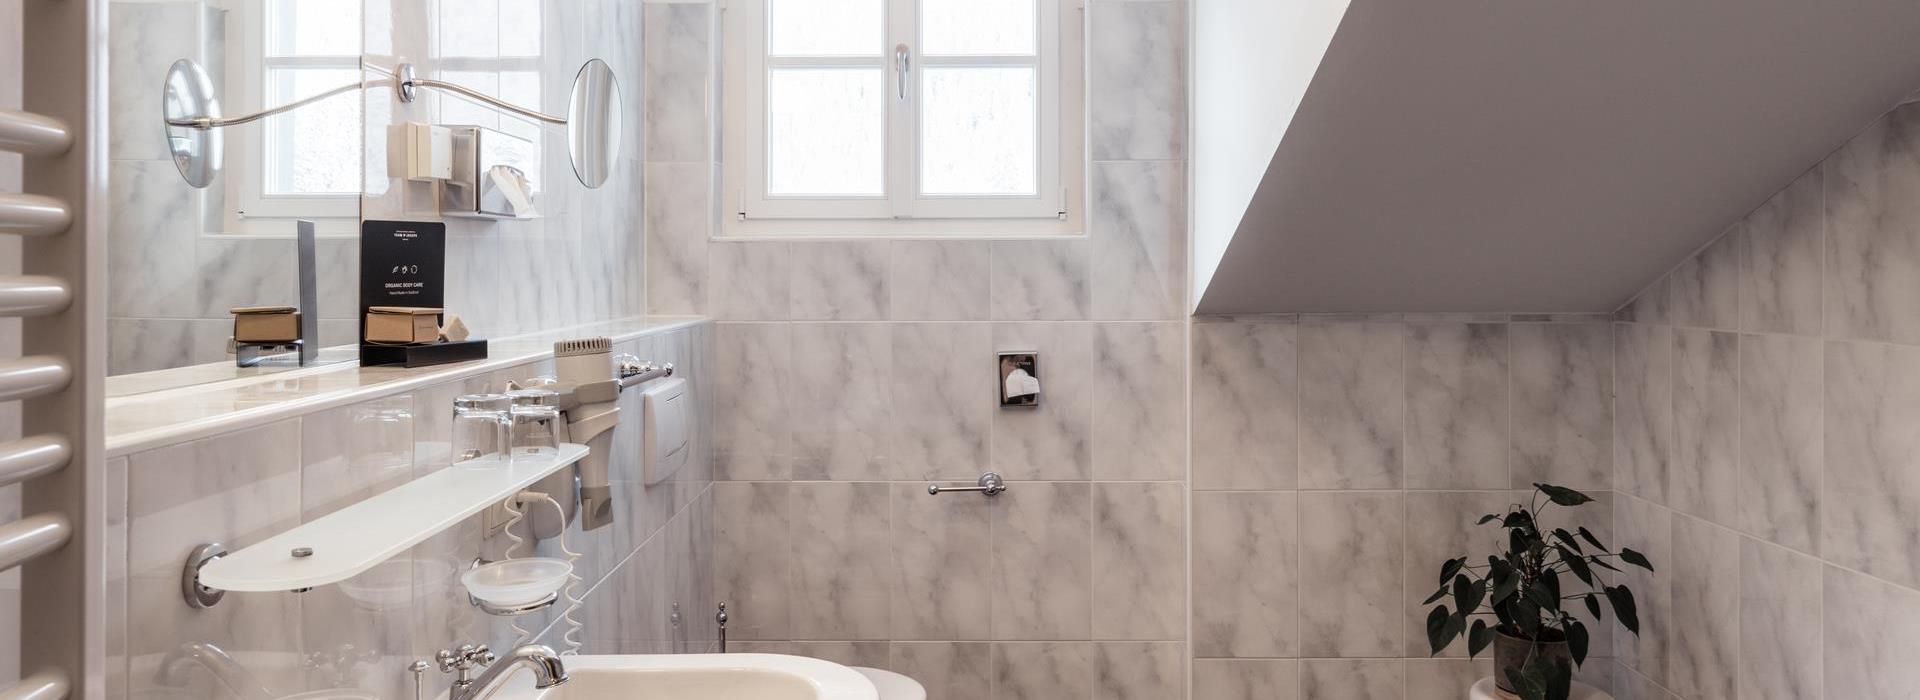 Badezimmer des Comfort Chalets mit Waschbecken, Badewanne, Bidet und WC